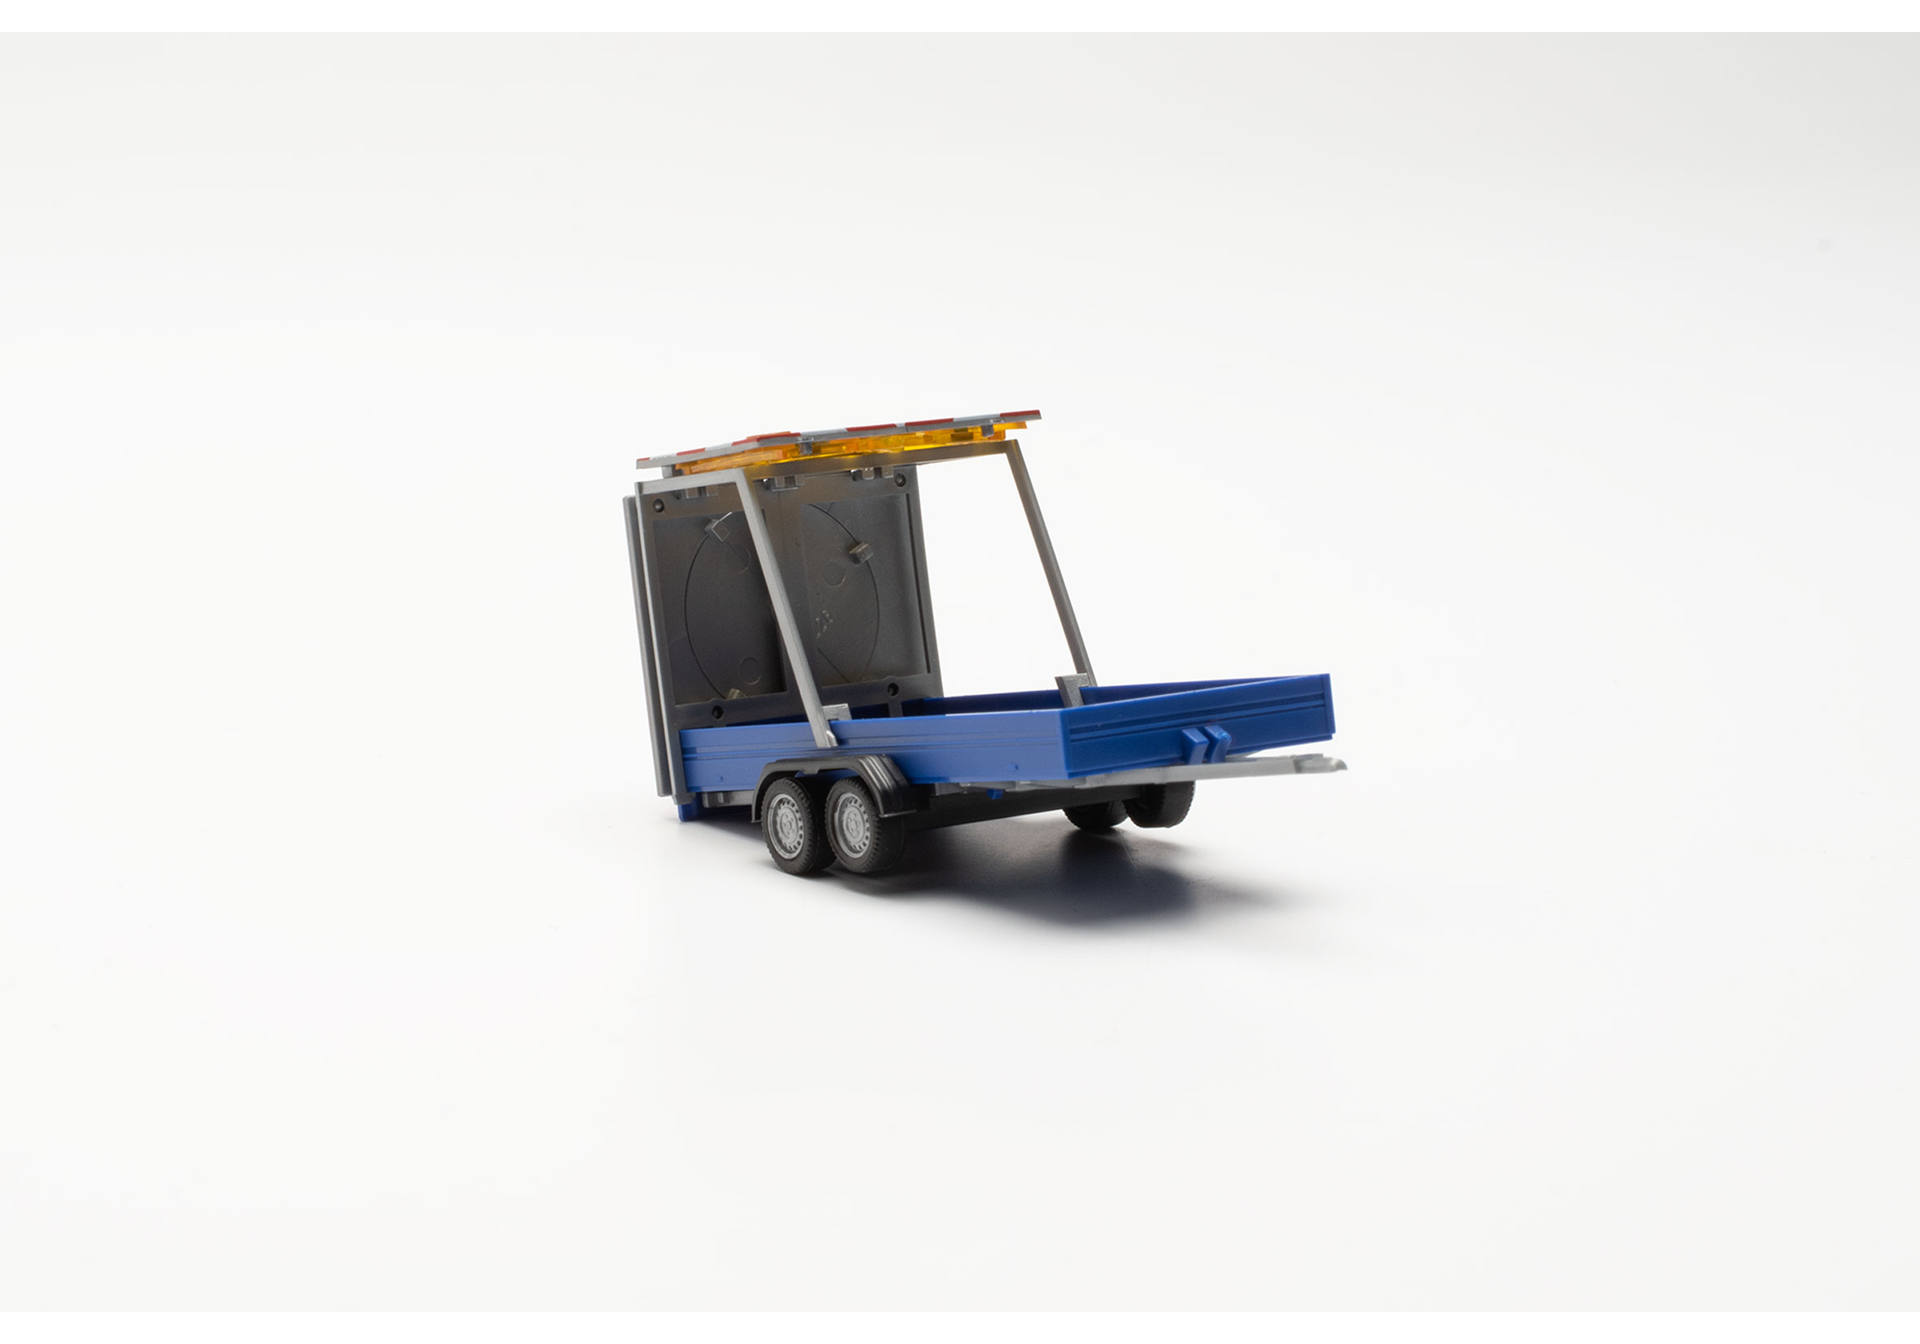 Traffic safety trailer, ultramarine blue